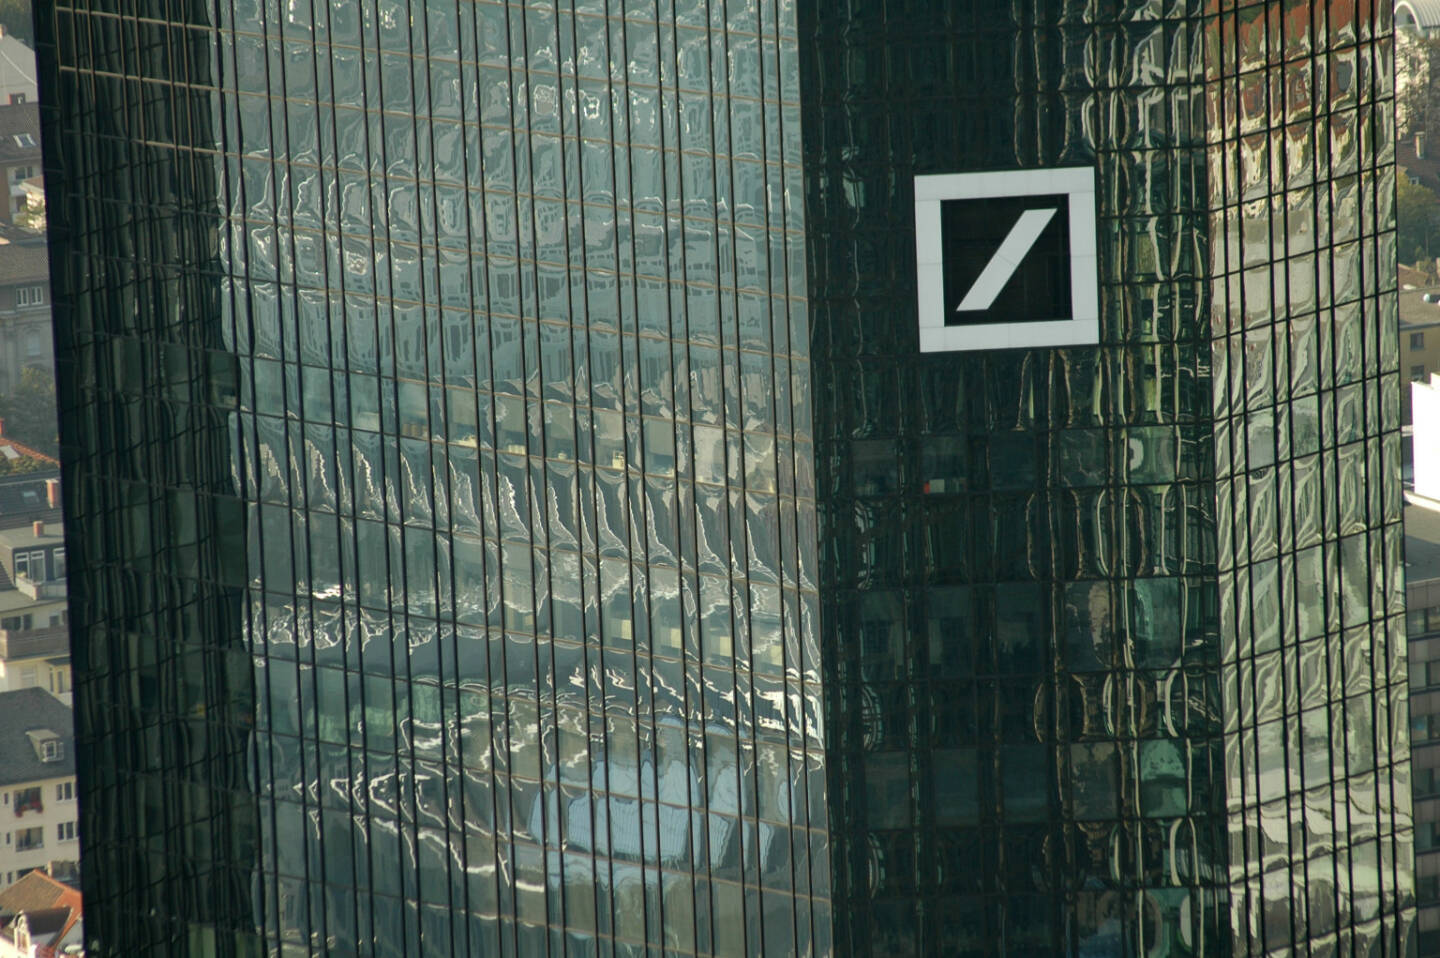 Deutsche Bank, Logo, Headquarter <a href=http://www.shutterstock.com/gallery-320989p1.html?cr=00&pl=edit-00>360b</a> / <a href=http://www.shutterstock.com/editorial?cr=00&pl=edit-00>Shutterstock.com</a>